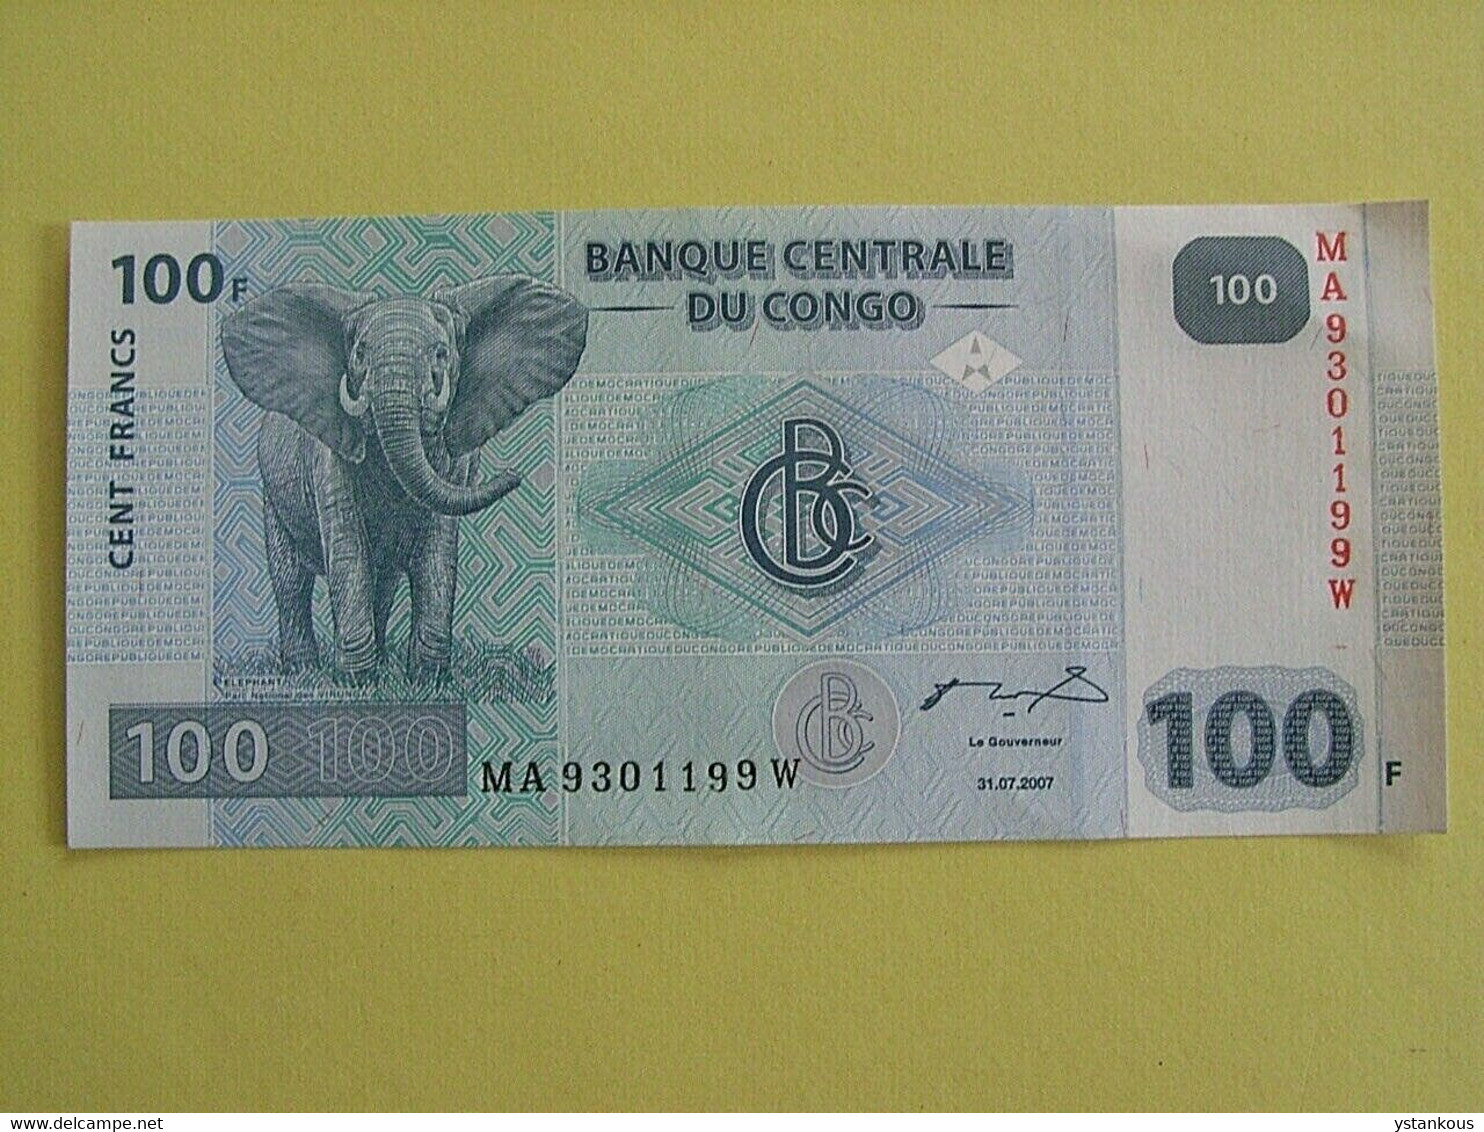 Billet De 100 Francs 2007 Banque Centrale Du Congo. - Ohne Zuordnung